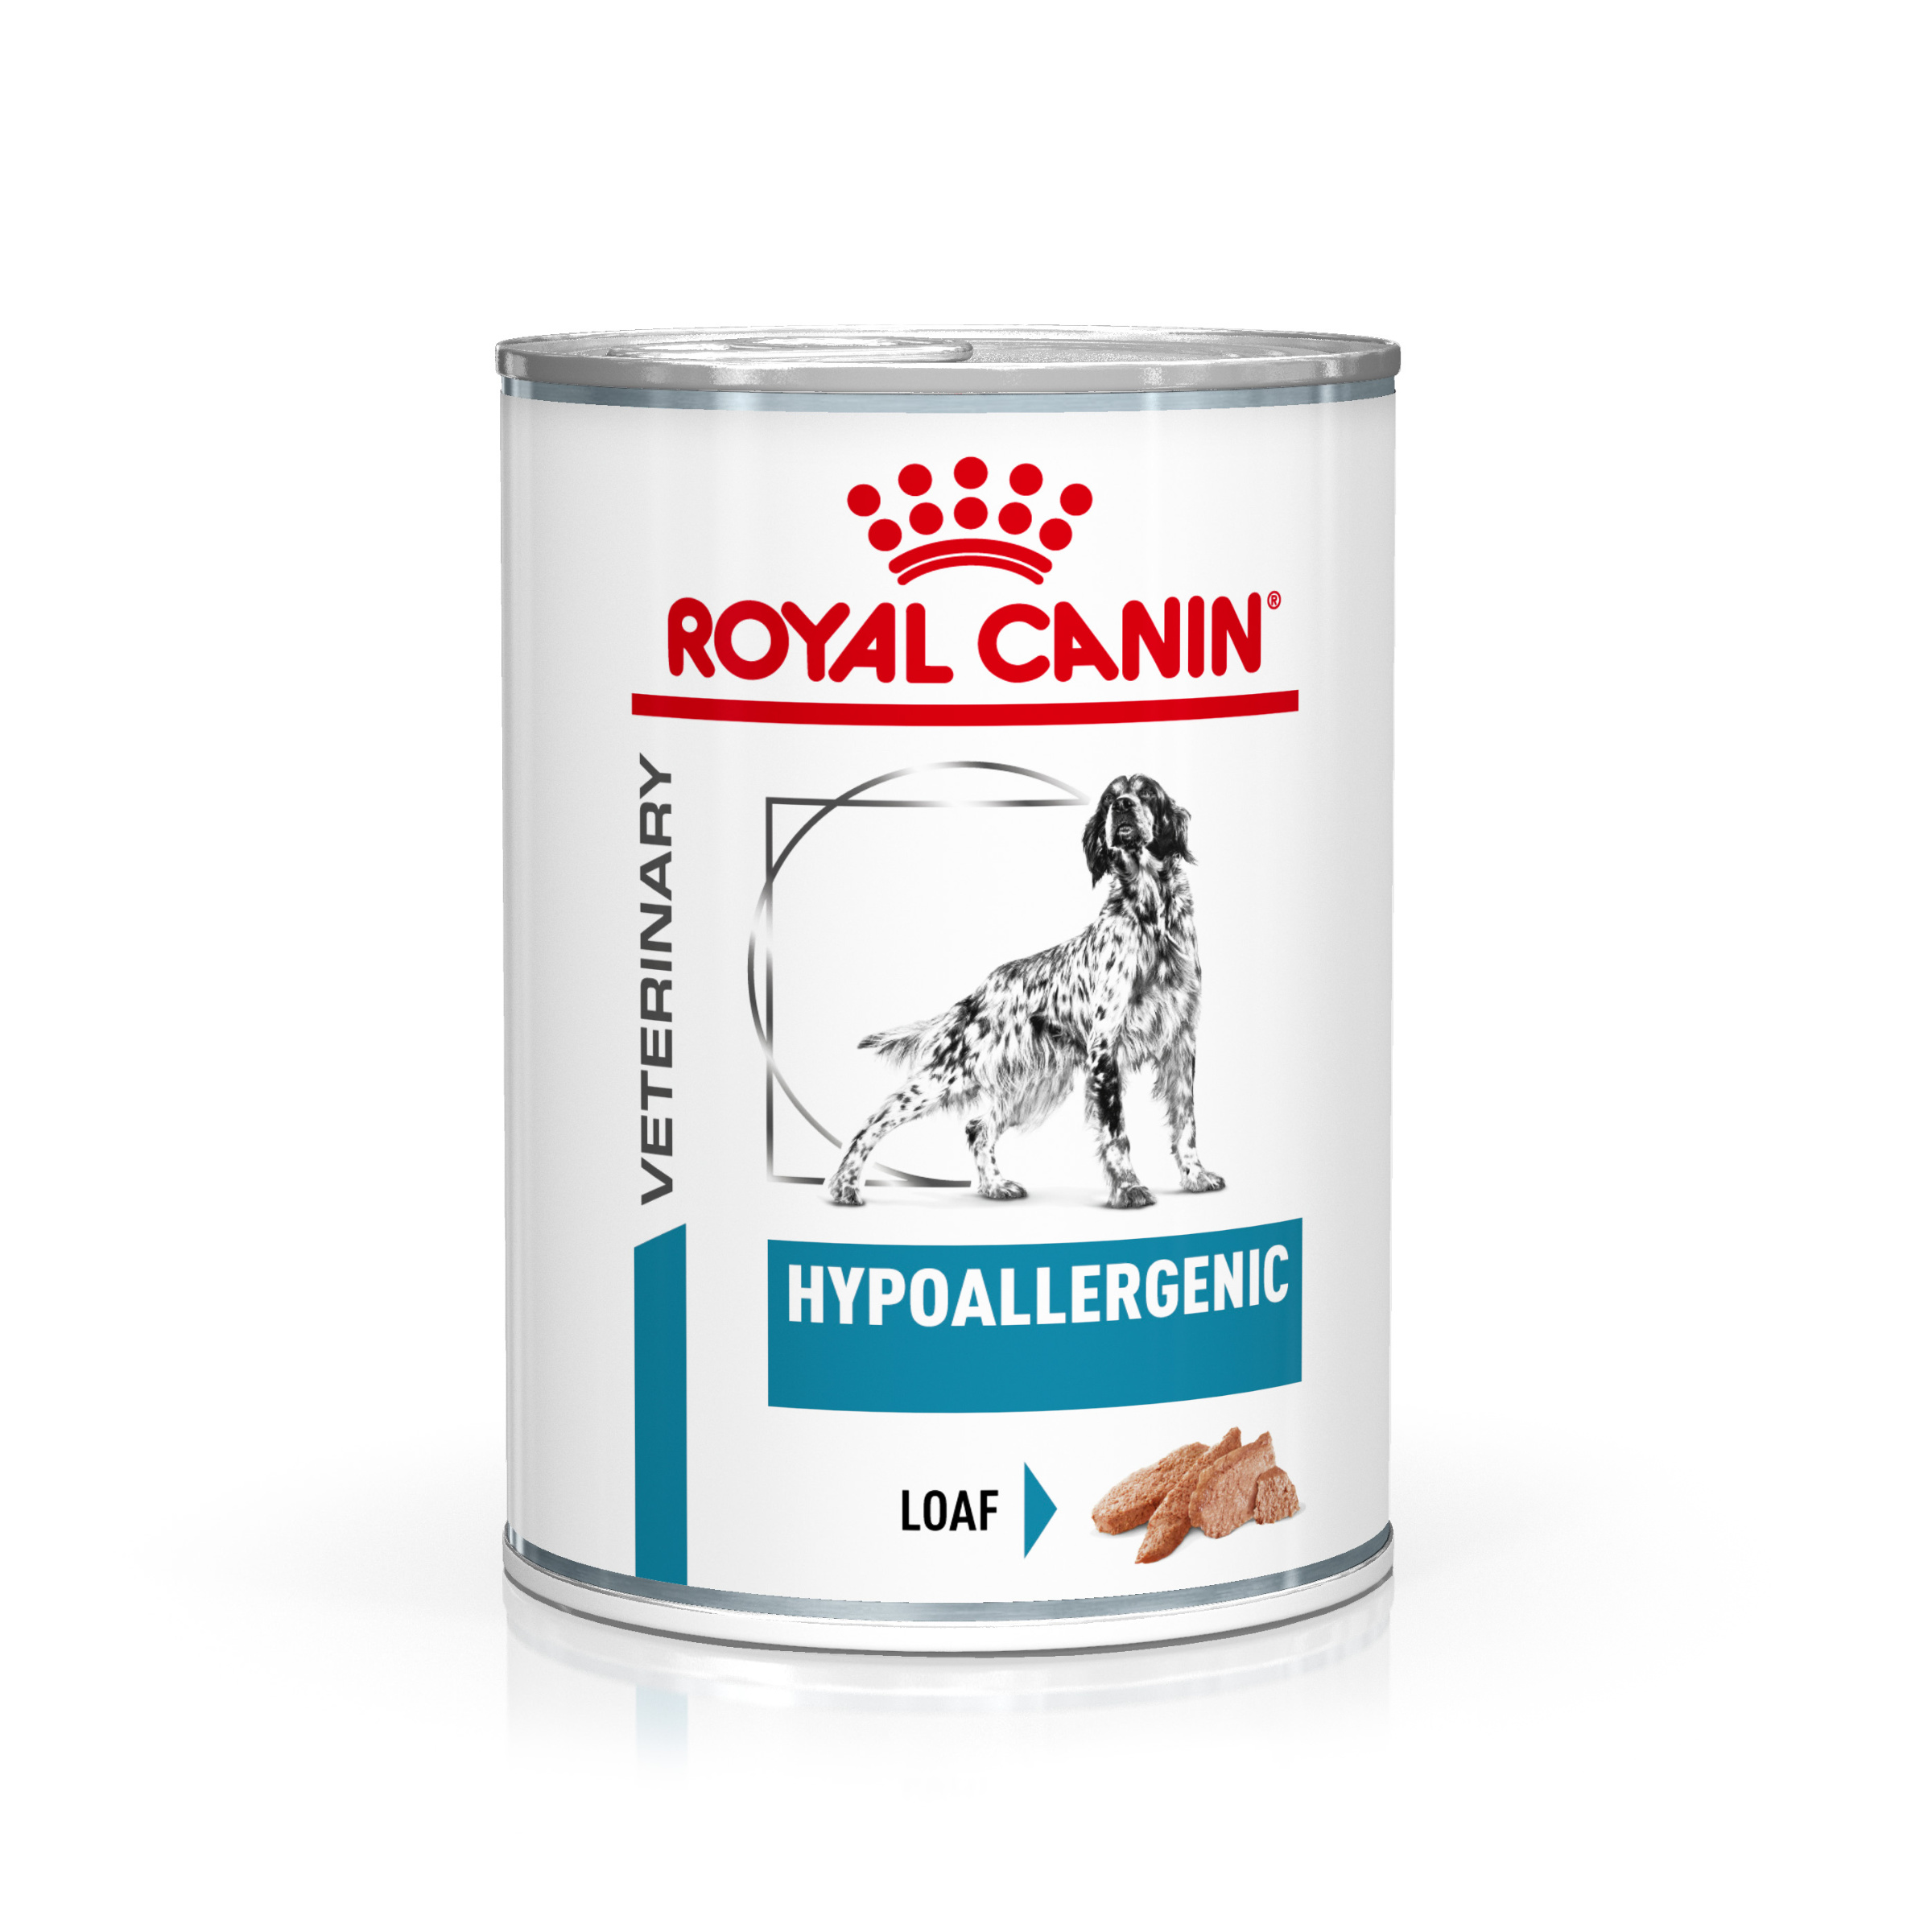 Royal Canin Veterinary Health Nutrition Dog HYPOALLERGEN konzerva - 400g